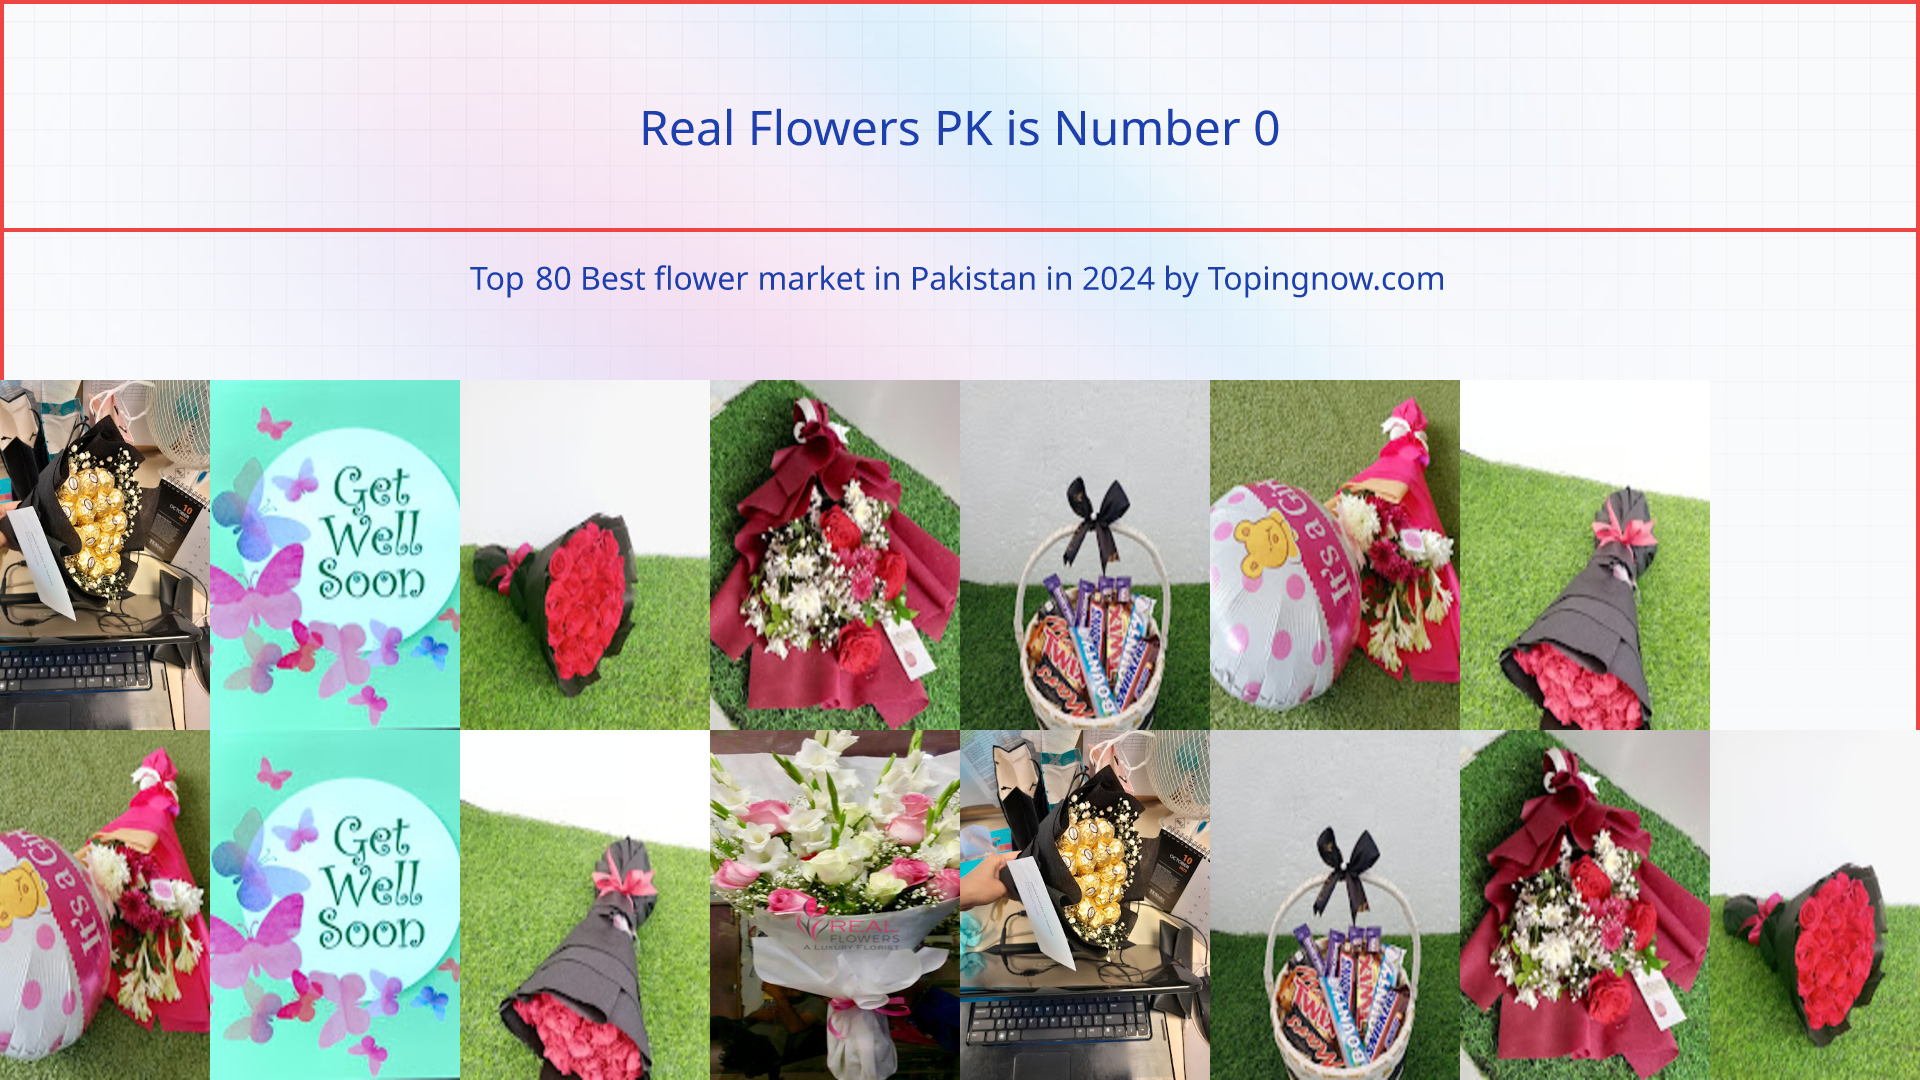 Real Flowers PK: Top 80 Best flower market in Pakistan in 2024